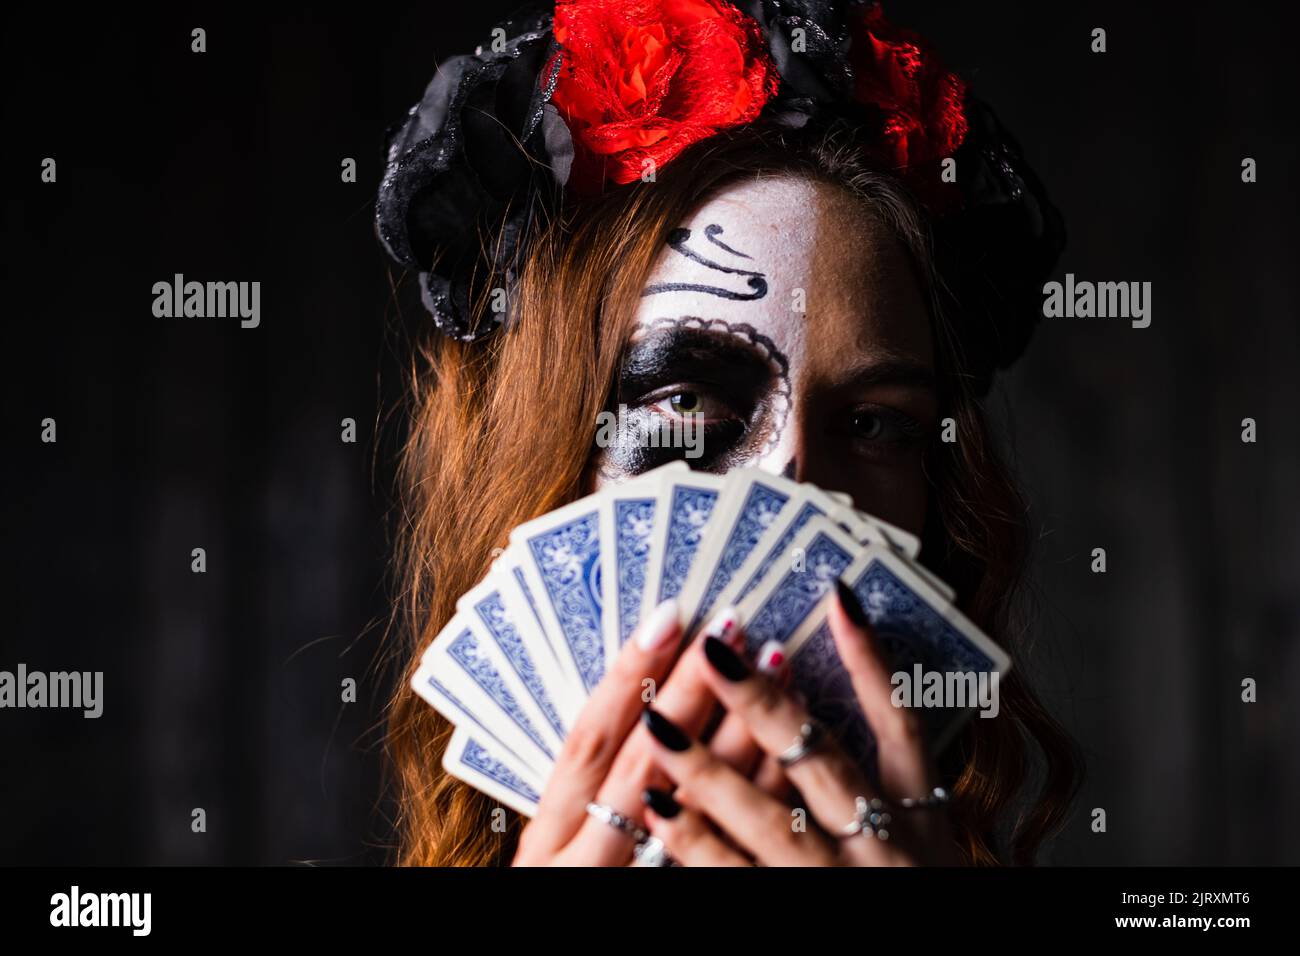 Una mujer con el maquillaje de Halloween en su cara en una corona de rosas rojas y negras se cubre con jugar a las cartas sobre un fondo oscuro Foto de stock